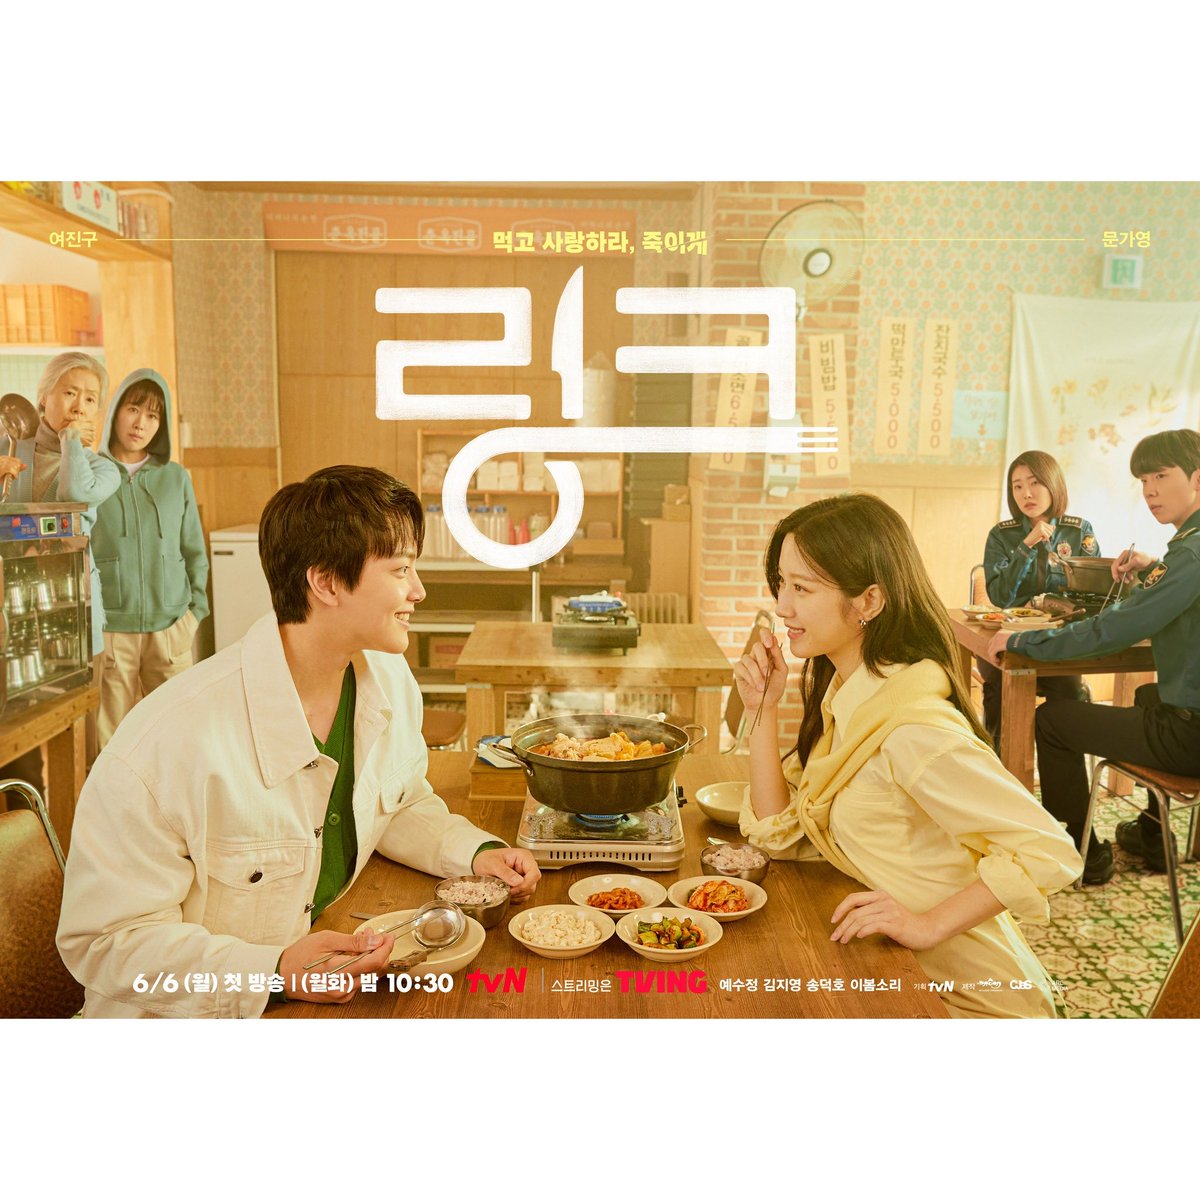 Upcoming TvN drama #Link group poster
#YeoJinGoo #MoonGaYoung #SongDeokHo #LeeBomSoRi #YeSooJung #KimJiYoung

📅June 6